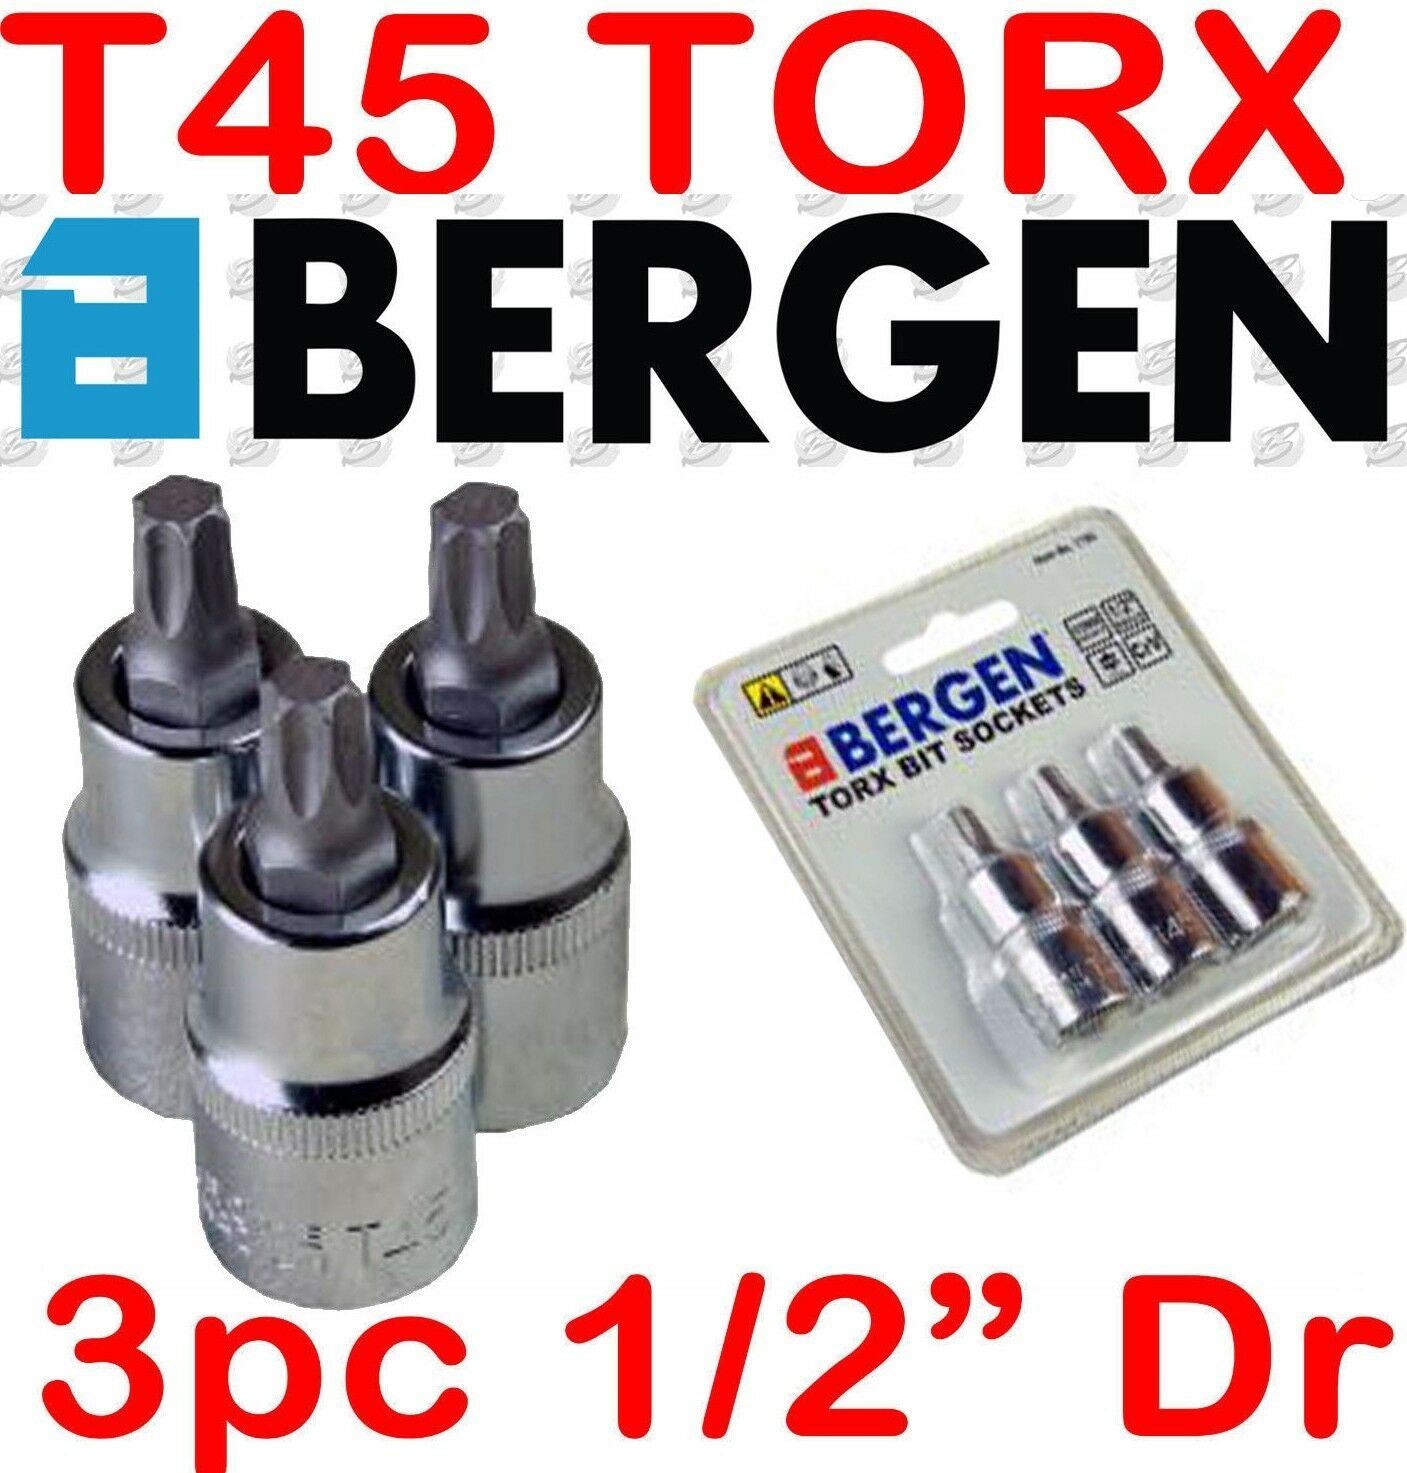 BERGEN 3PCS 1/2" DRIVE T45 TORX BIT SOCKETS